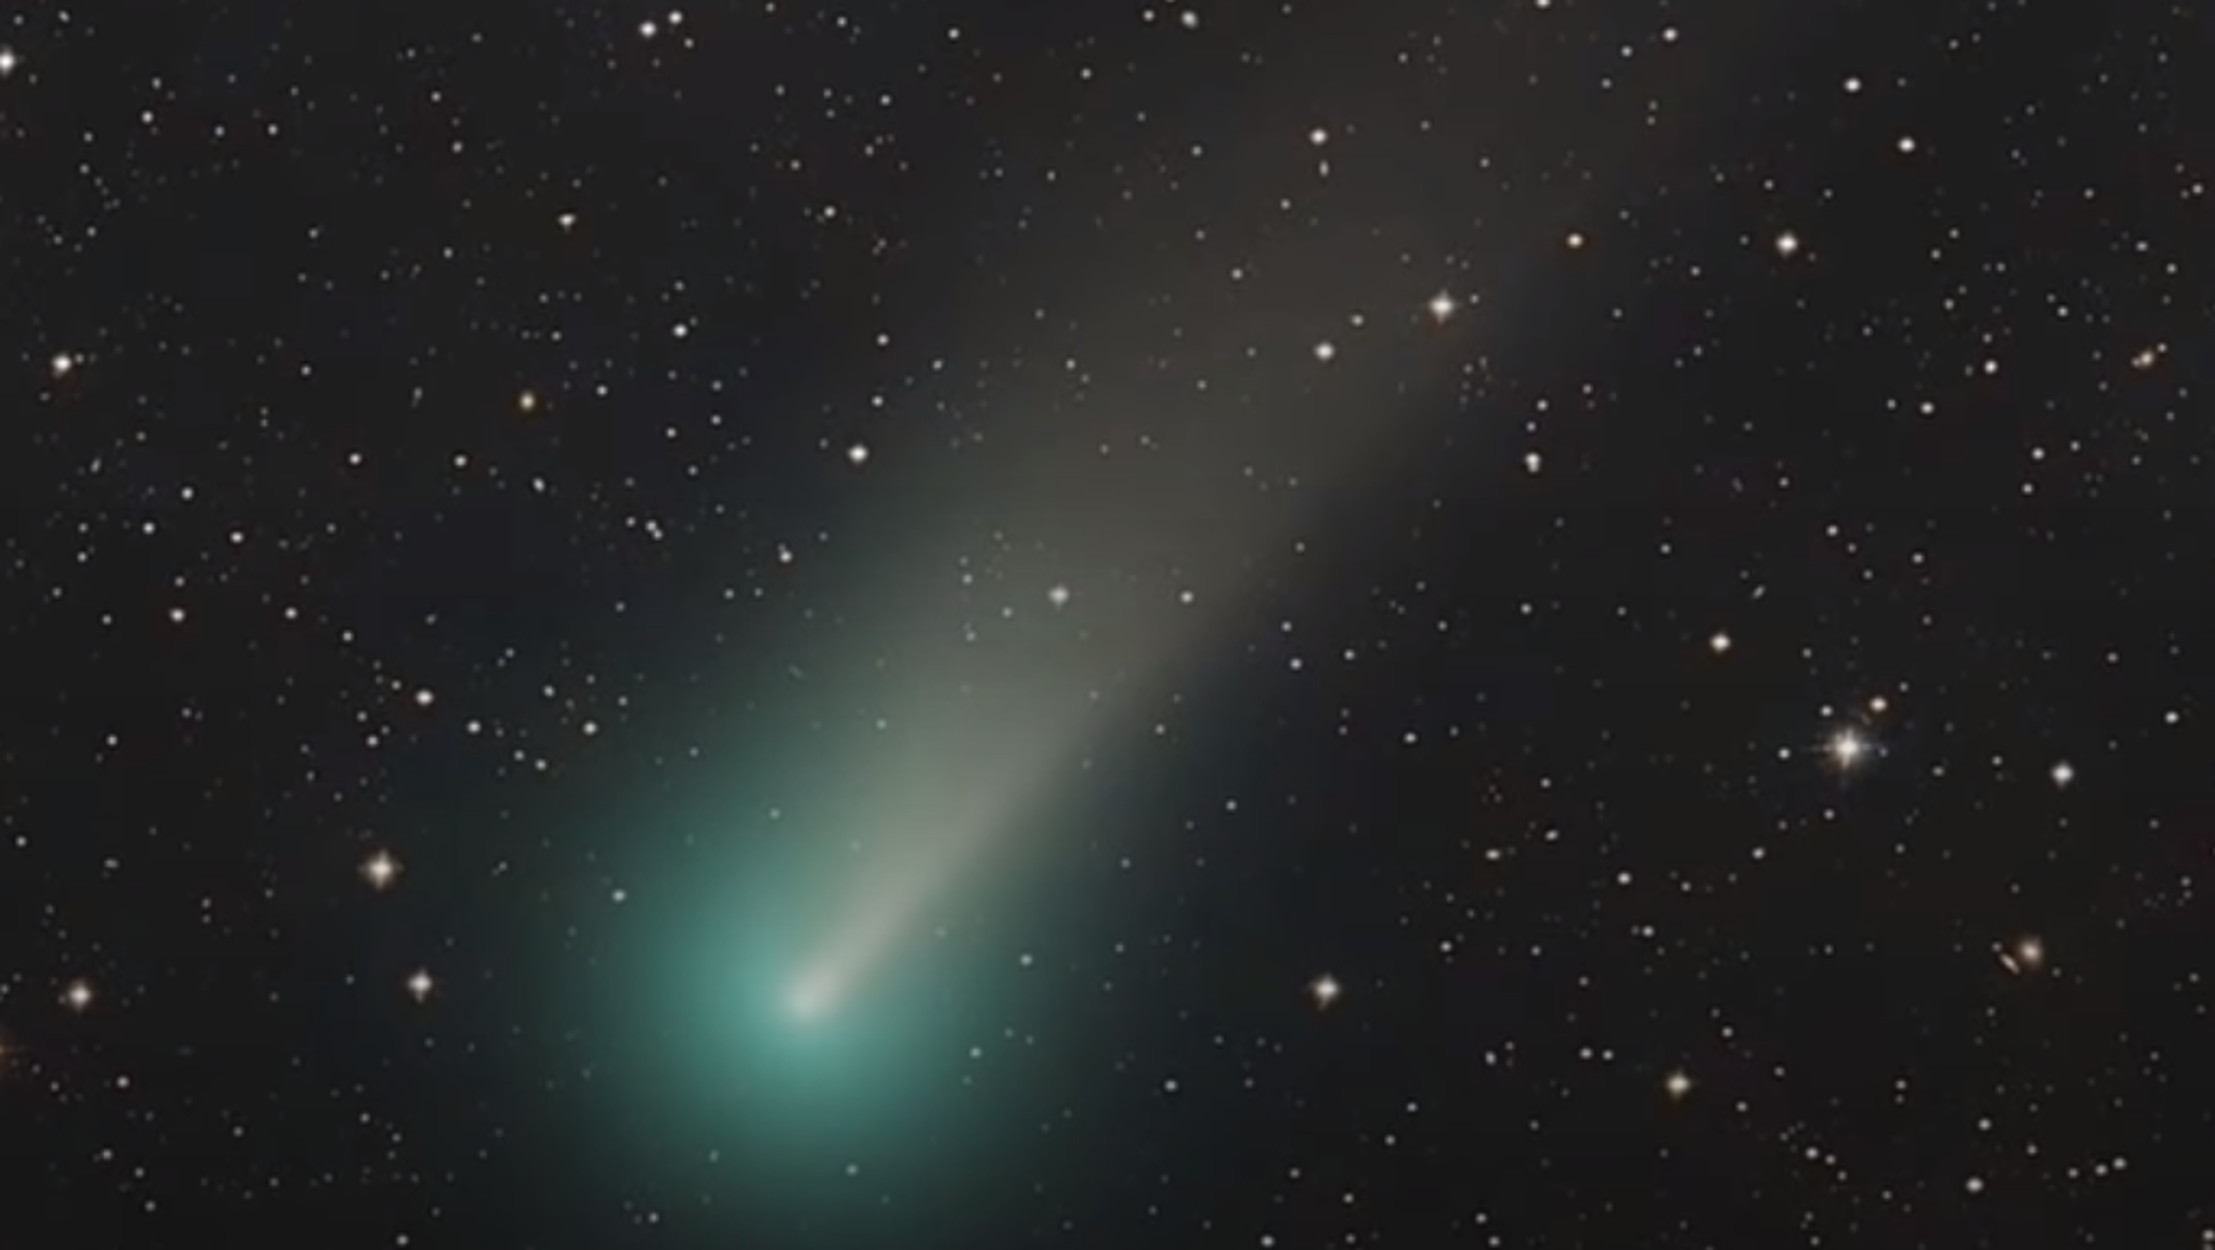 Πράσινος κομήτης πλησιάζει με ταχύτητα την Γη – Είχε ξαναέρθει την εποχή των Νεάτερνταλ